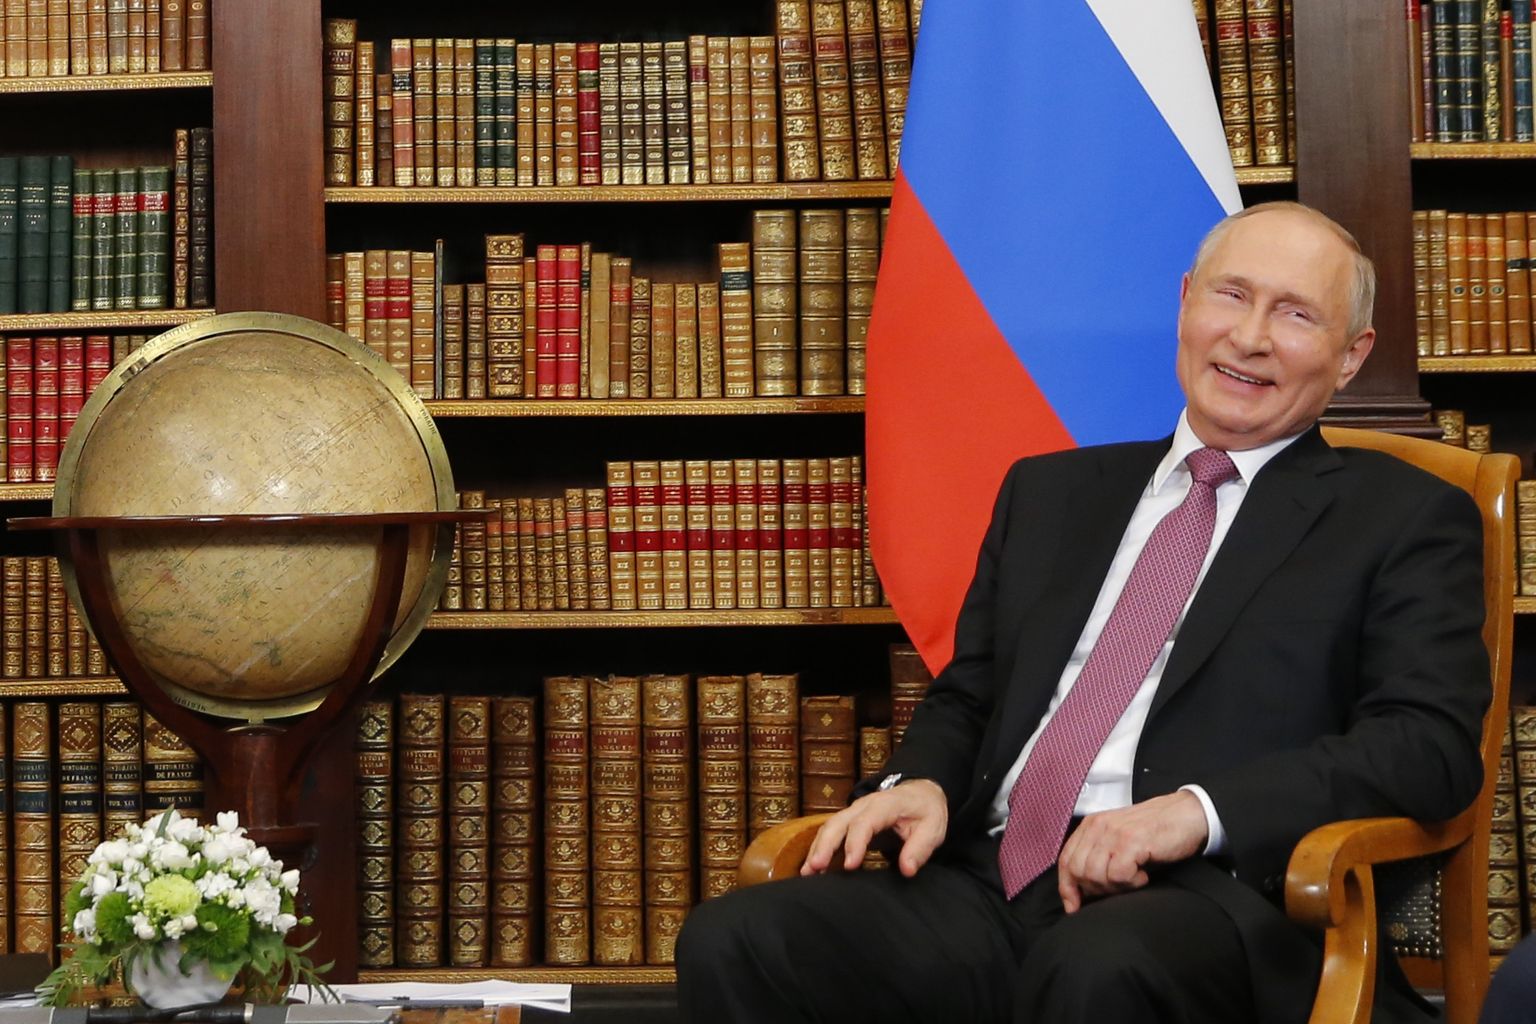 Venemaa president Vladimir Putin 16. juunil 2021 Šveitsis Genfis Villa La Grange'is kohtumisel USA presidendi Joe Bideniga (ei ole pildil)